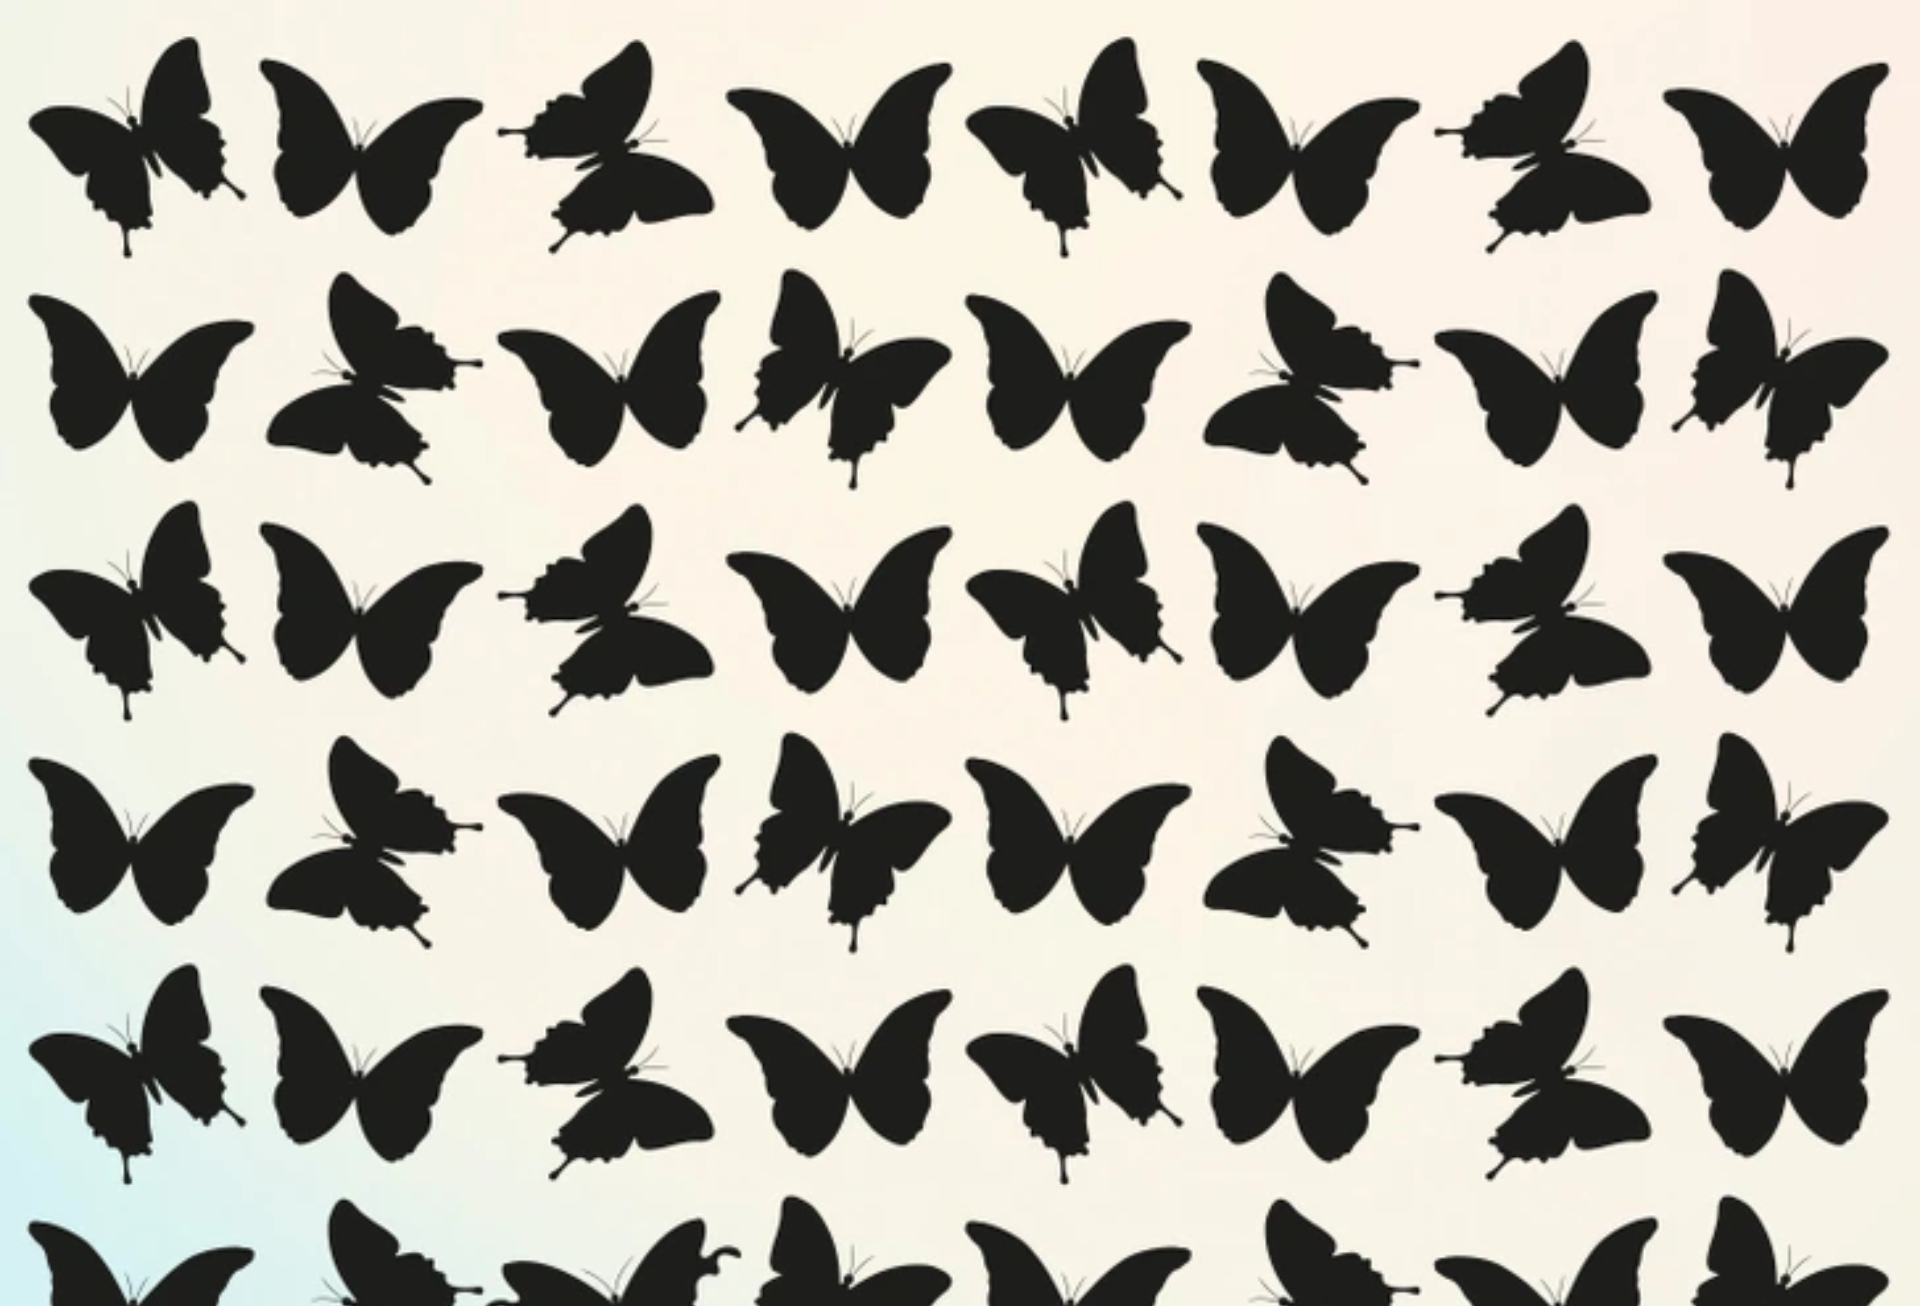 Villámfejtörő: észreveszed, melyik pillangó különbözik a többitől?